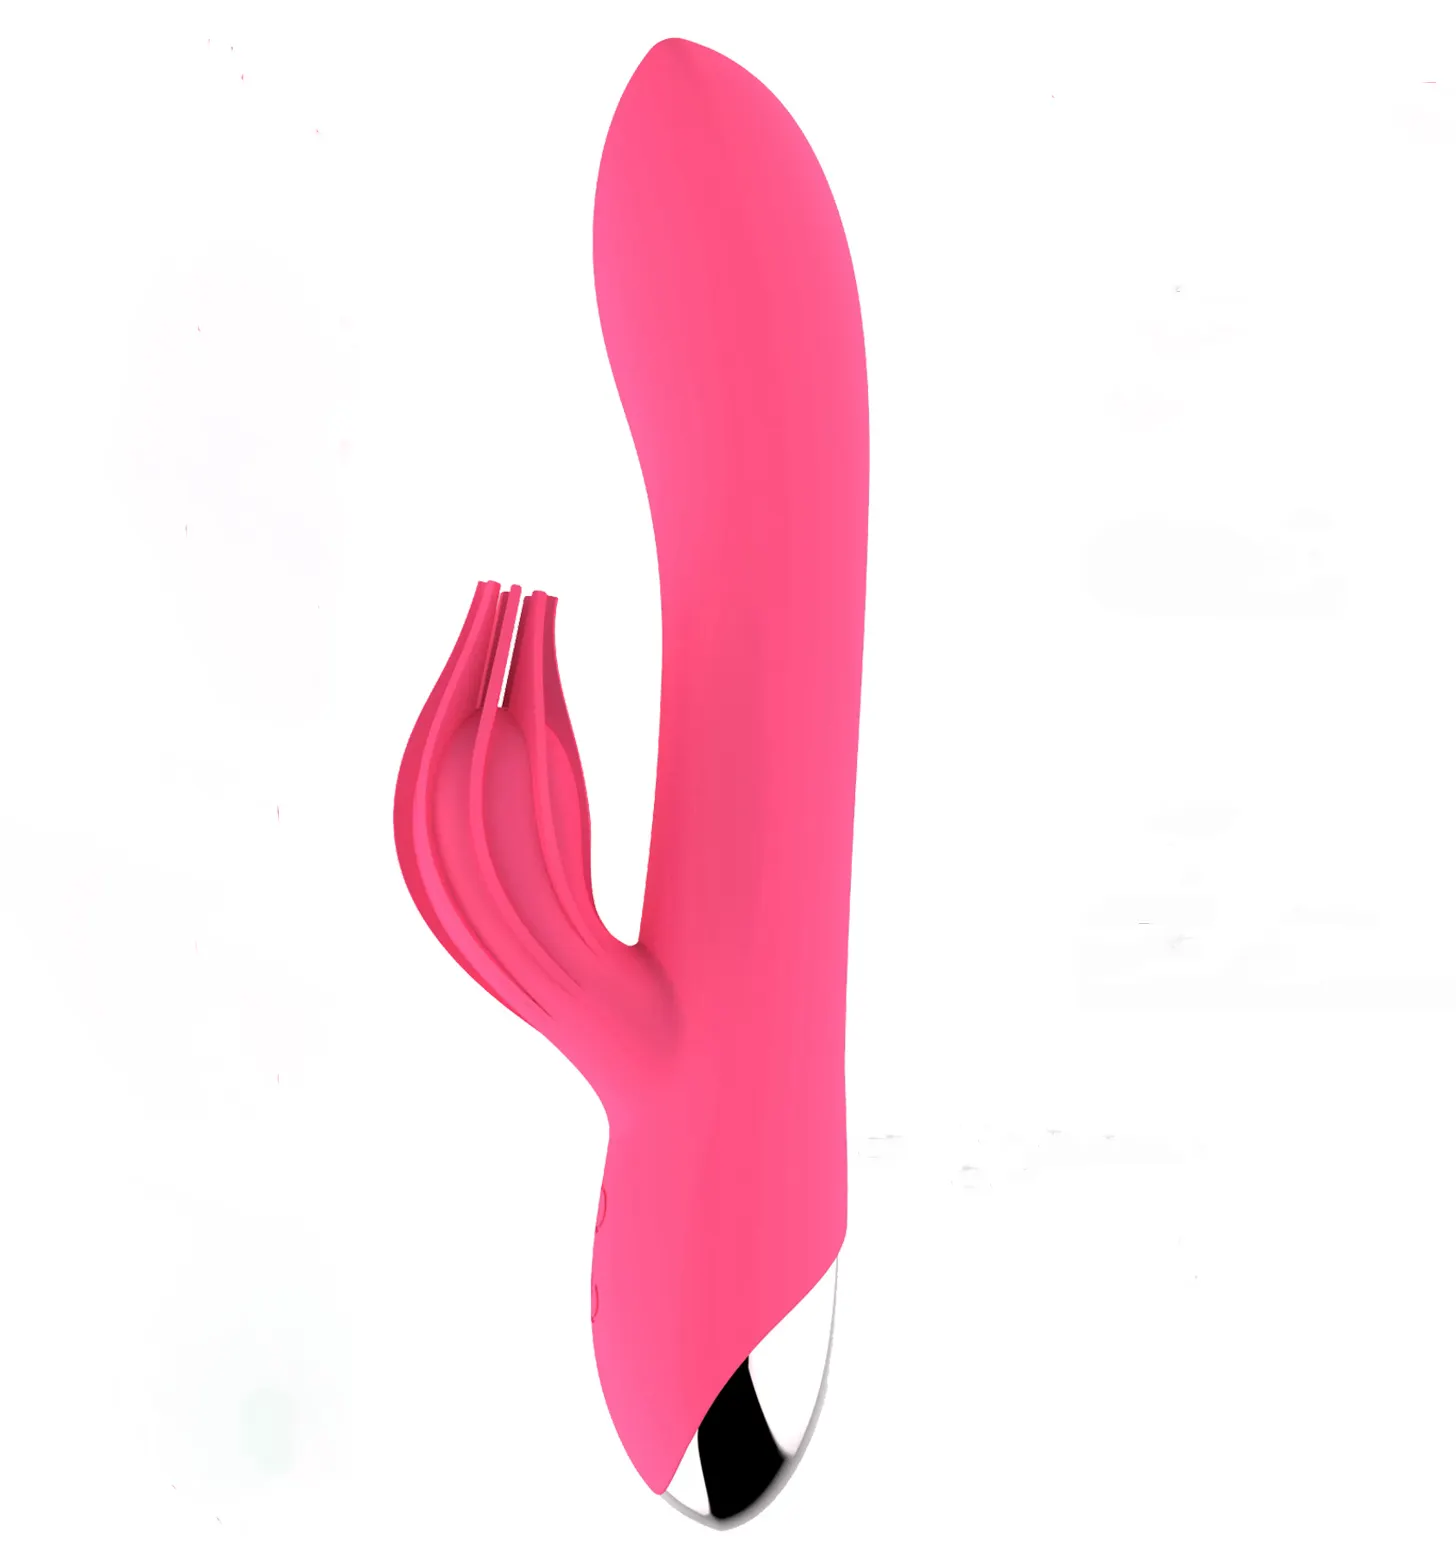 10 Vibration 2 in 1 medizinischer Qualität Silikon Masturbation Klitoris G-Punkt Freis prec heinrich tung Sexspielzeug für japanischen Film dildo